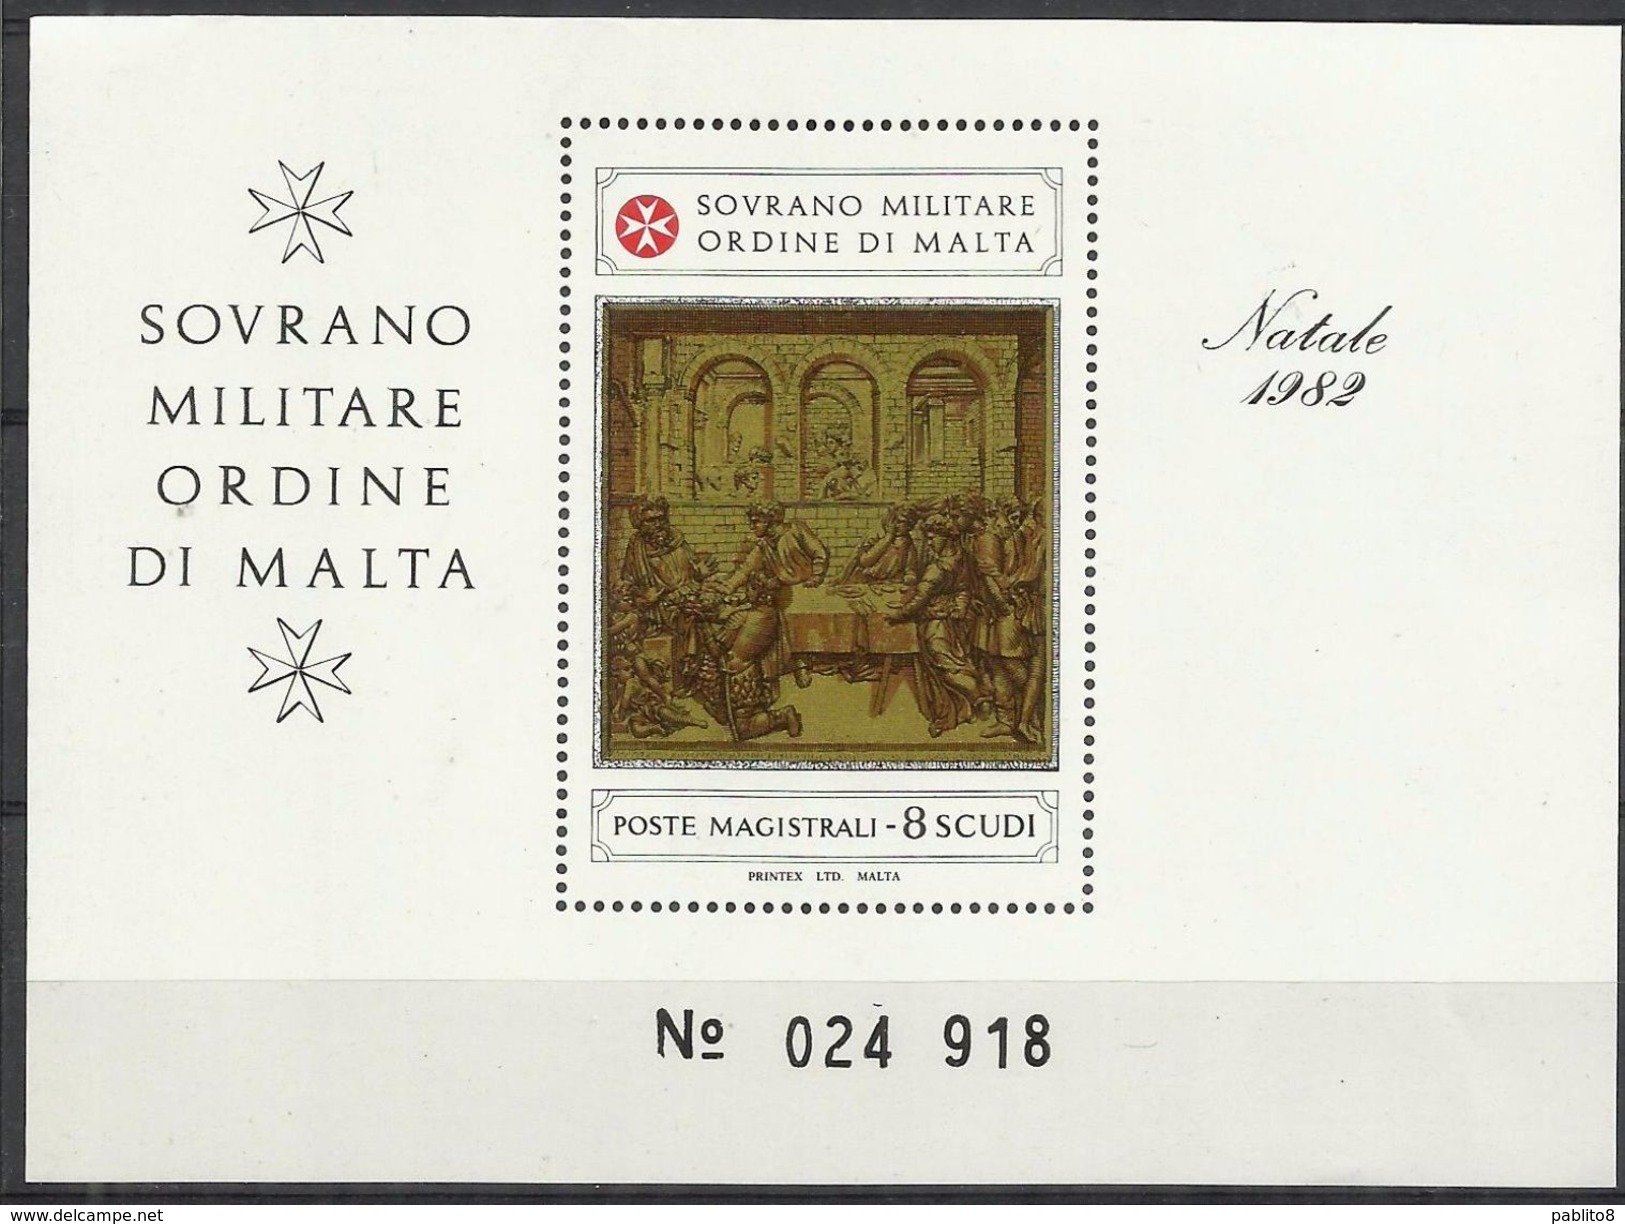 SMOM SOVRANO ORDINE MILITARE DI MALTA 1982 NATALE CHRISTMAS NOEL WEIHNACHTEN NAVIDAD BLOCK SHEET BLOCCO FOGLIETTO MNH - Malte (Ordre De)